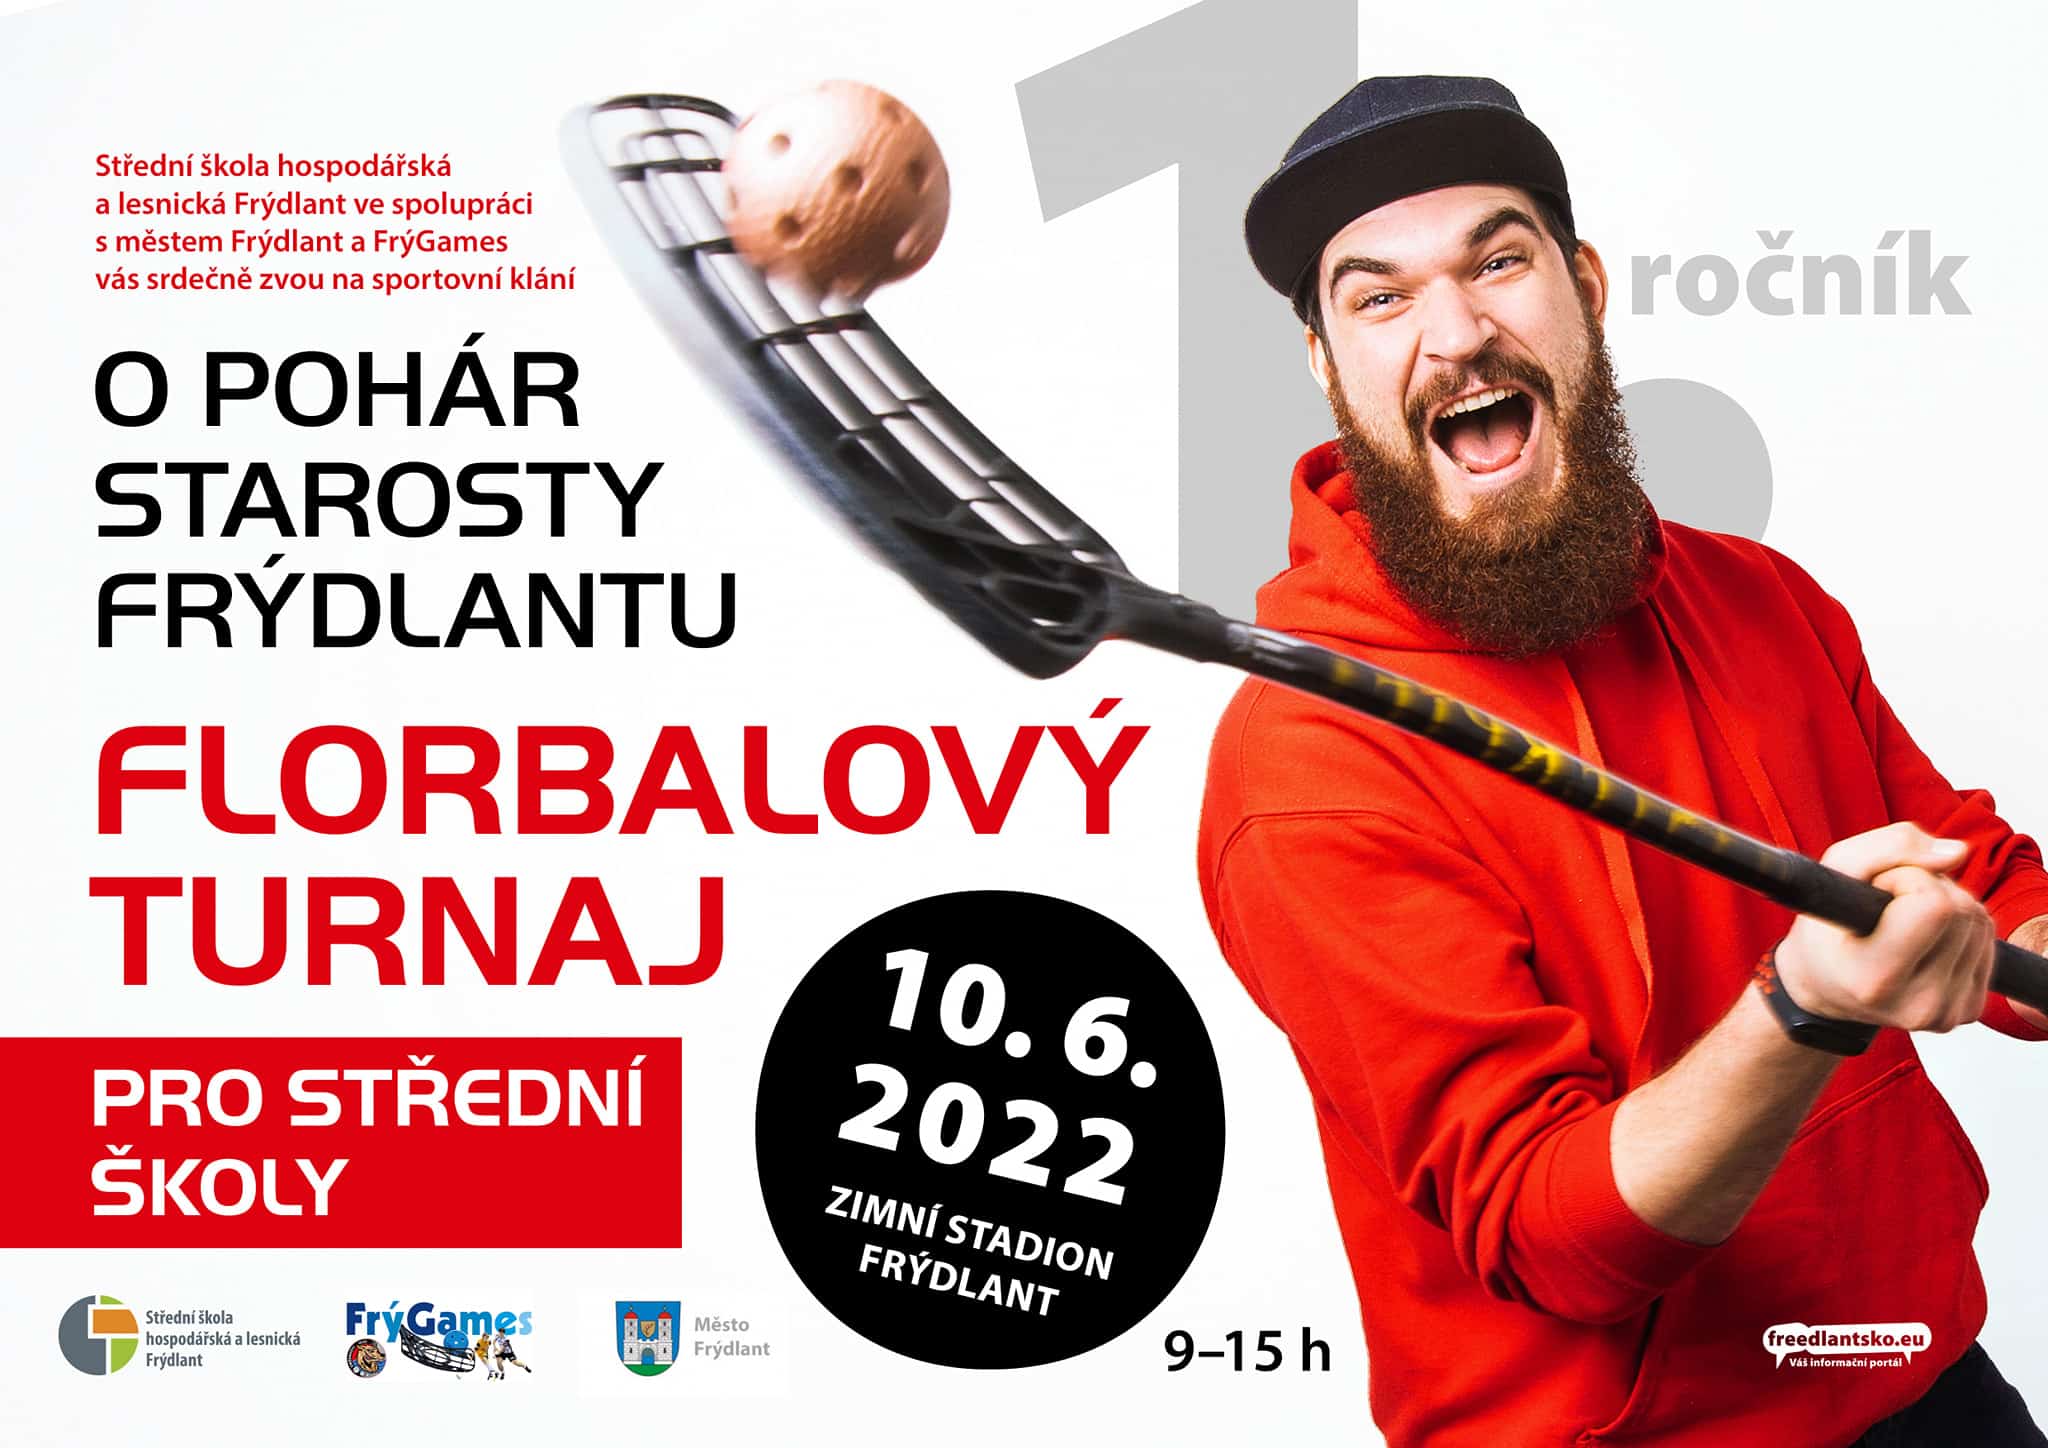 328 florbal turnaj skola hospodarska lesnicka 2022 frydlantsko